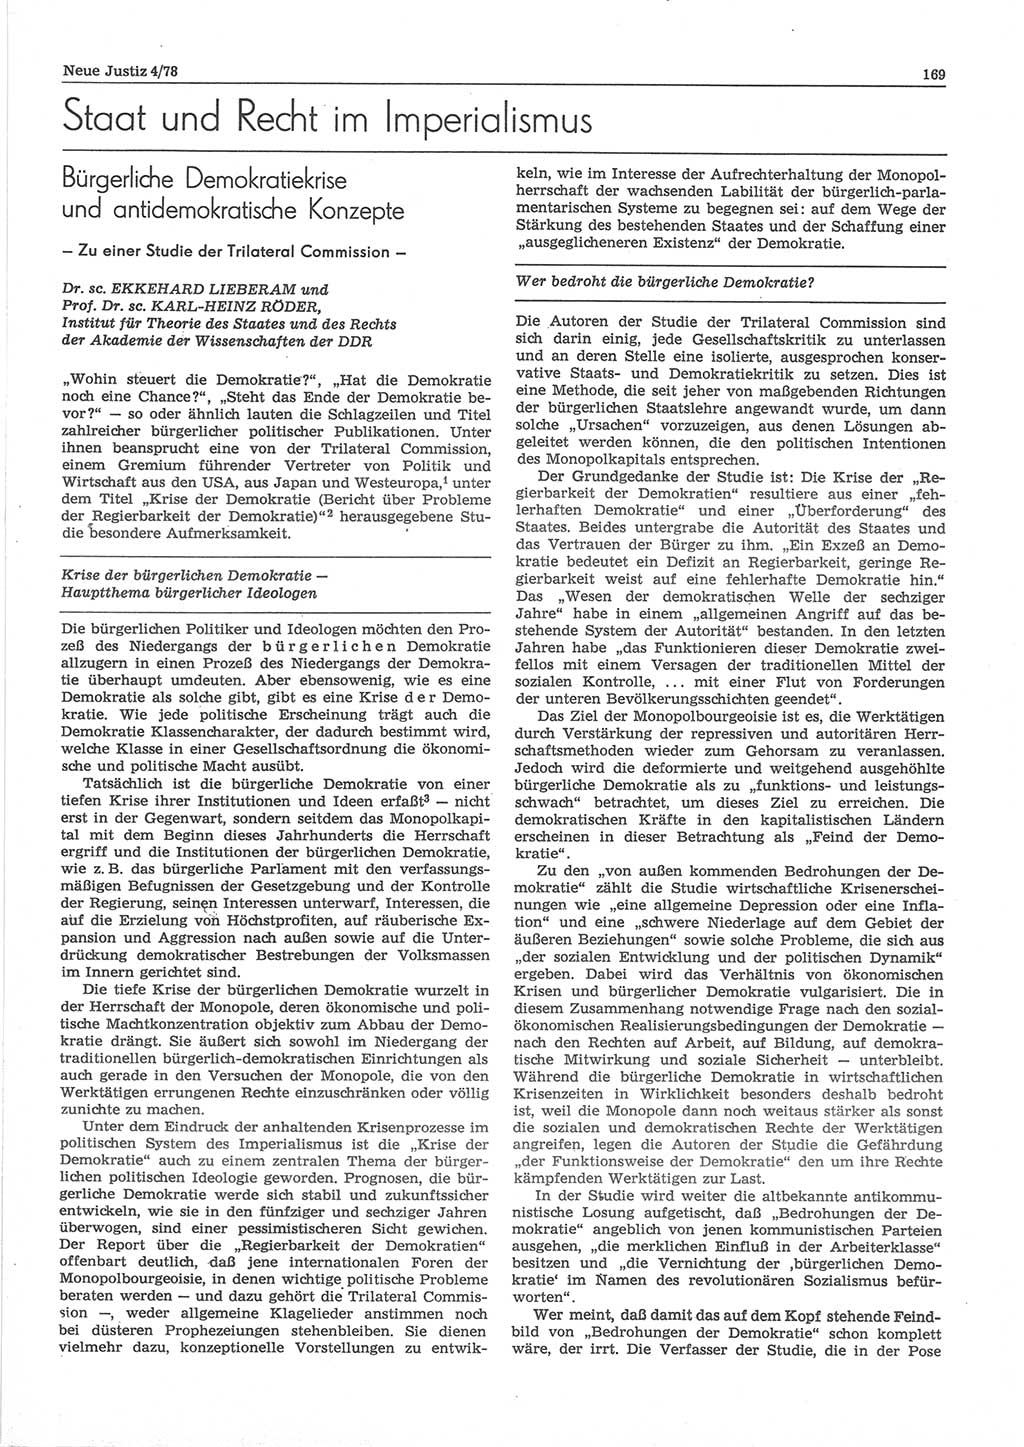 Neue Justiz (NJ), Zeitschrift für sozialistisches Recht und Gesetzlichkeit [Deutsche Demokratische Republik (DDR)], 32. Jahrgang 1978, Seite 169 (NJ DDR 1978, S. 169)